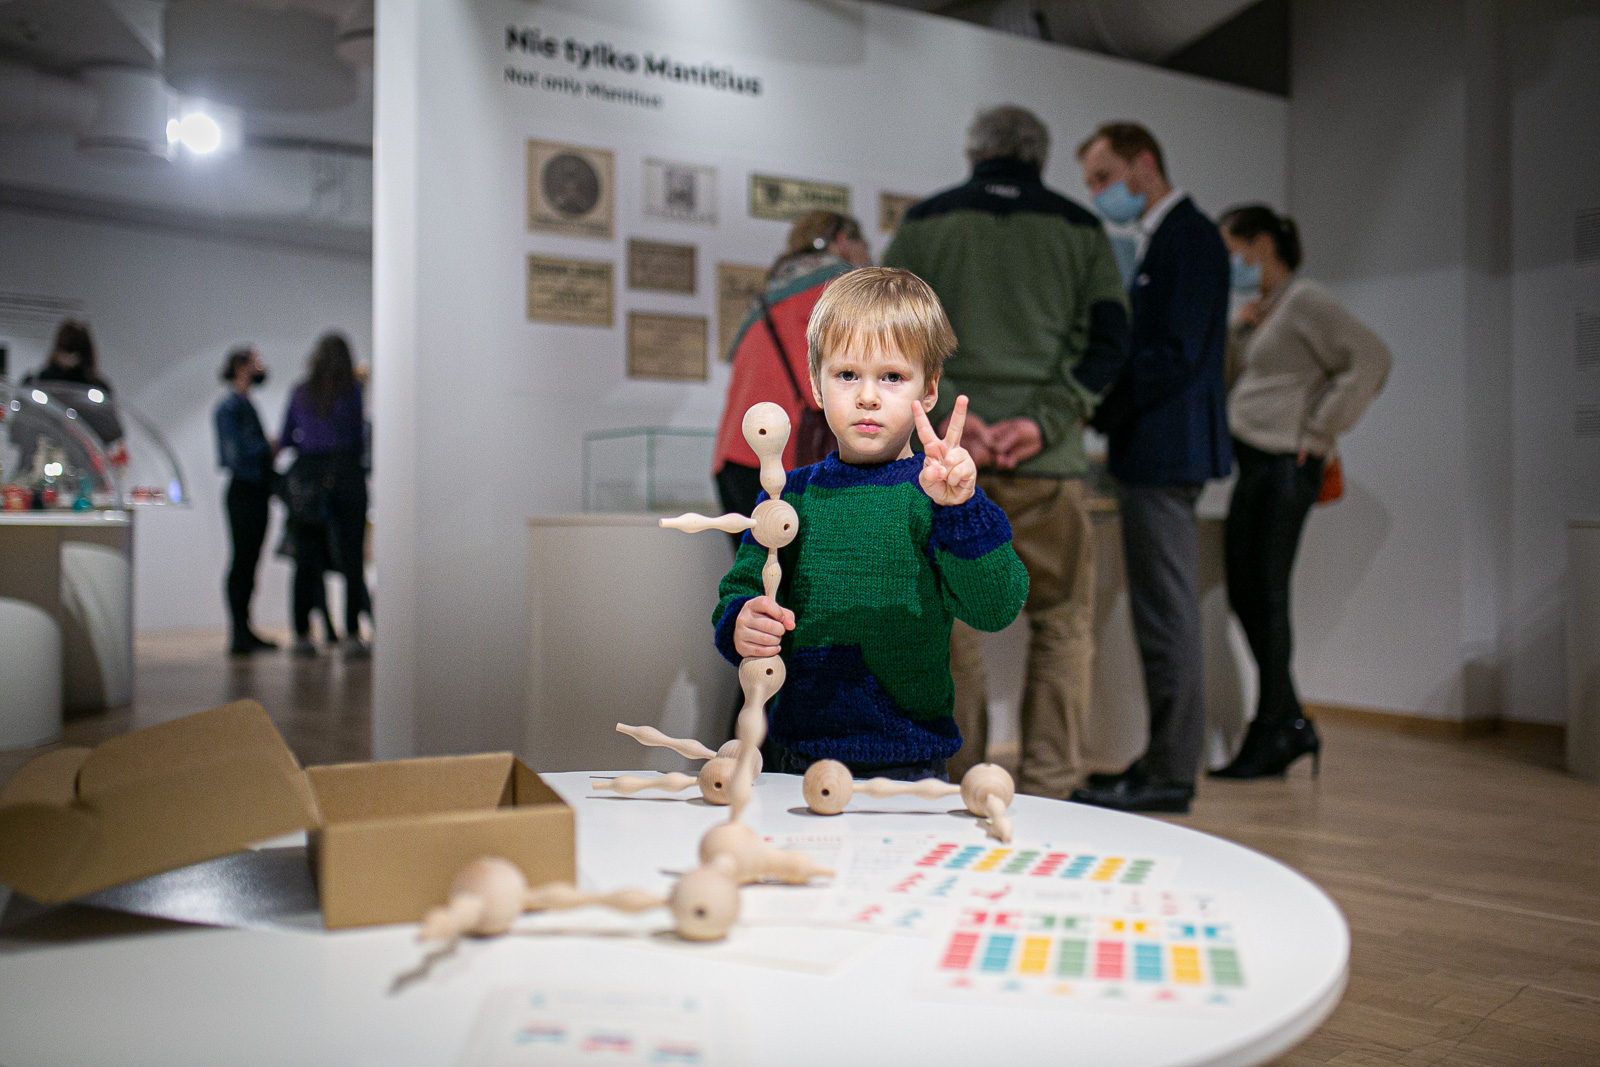 chłopiec na wystawie bawi się drewnianą zabawką, w tle zwiedzający wystawę